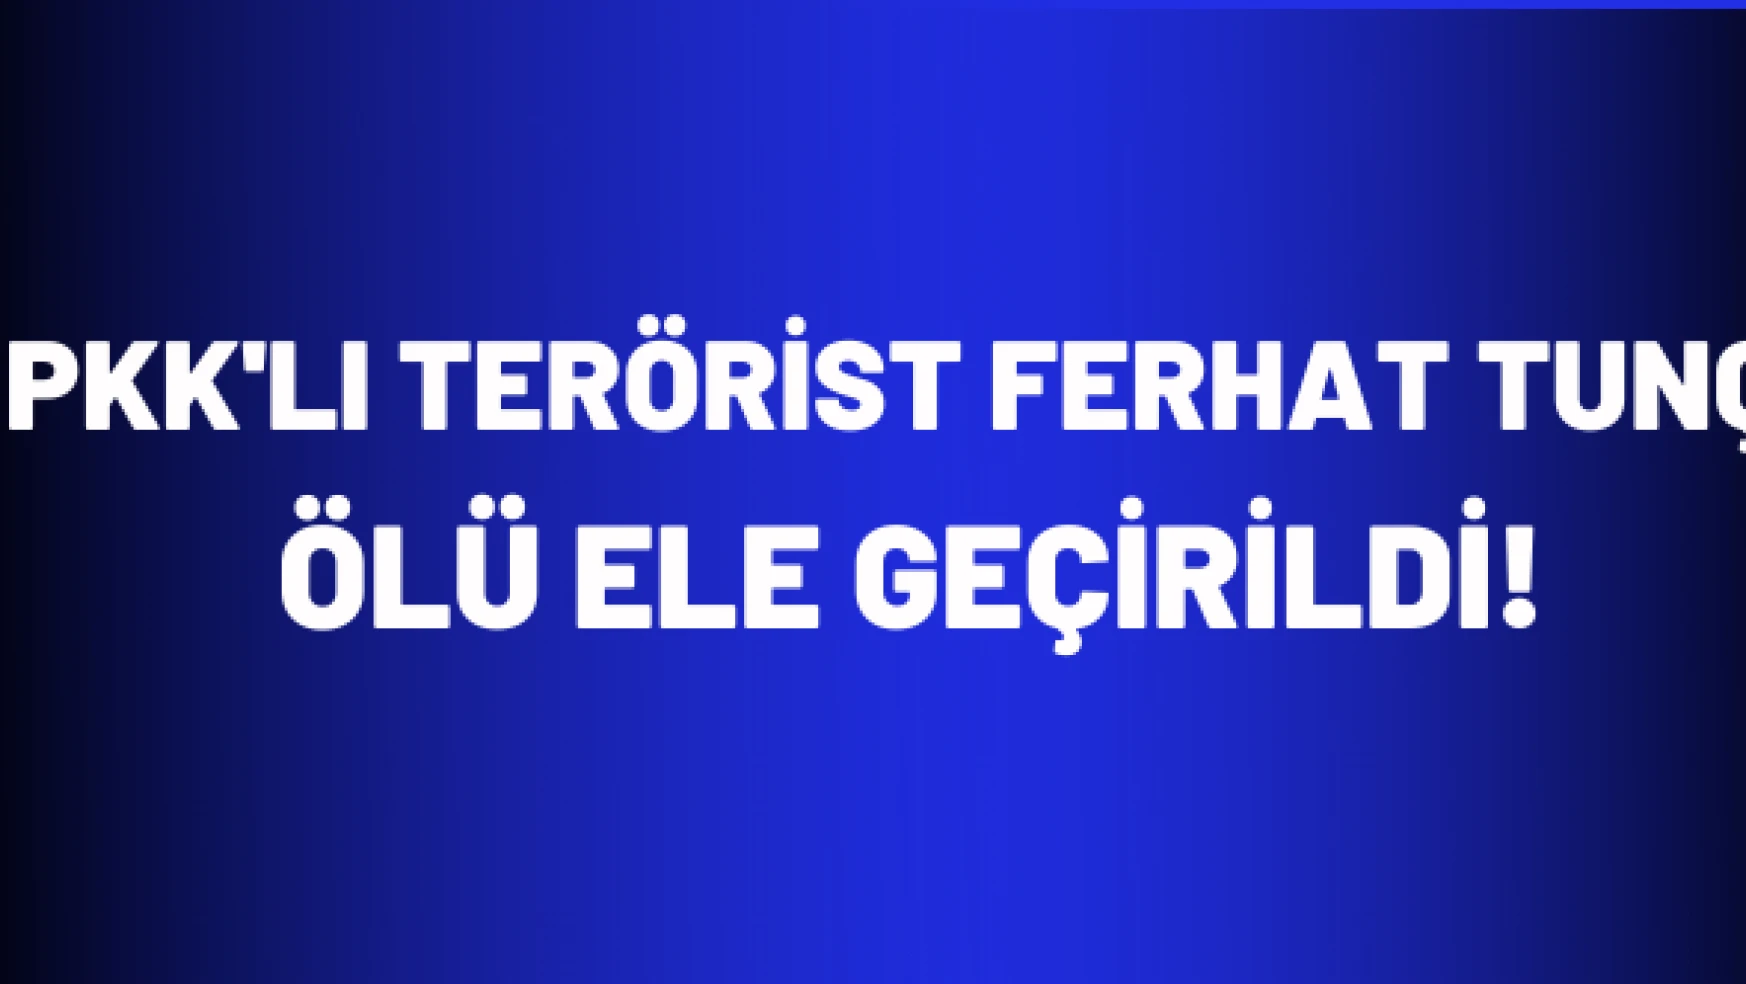 PKK'lı terörist Ferhat Tunç ölü geçirildi